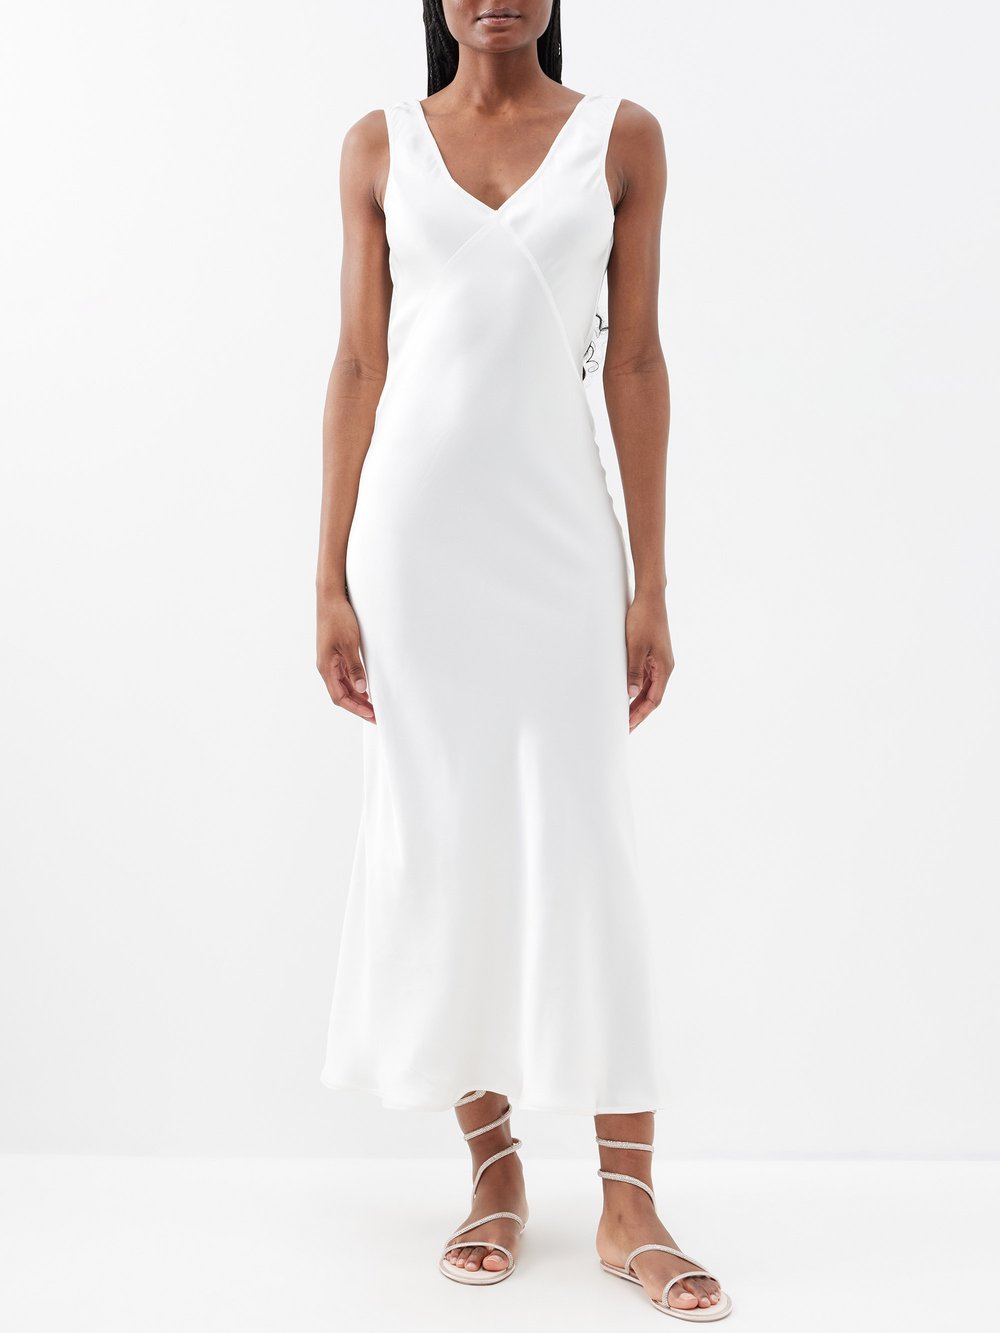 Атласное платье миди bordeaux с v-образным вырезом на спине Asceno, белый платье с косой планкой